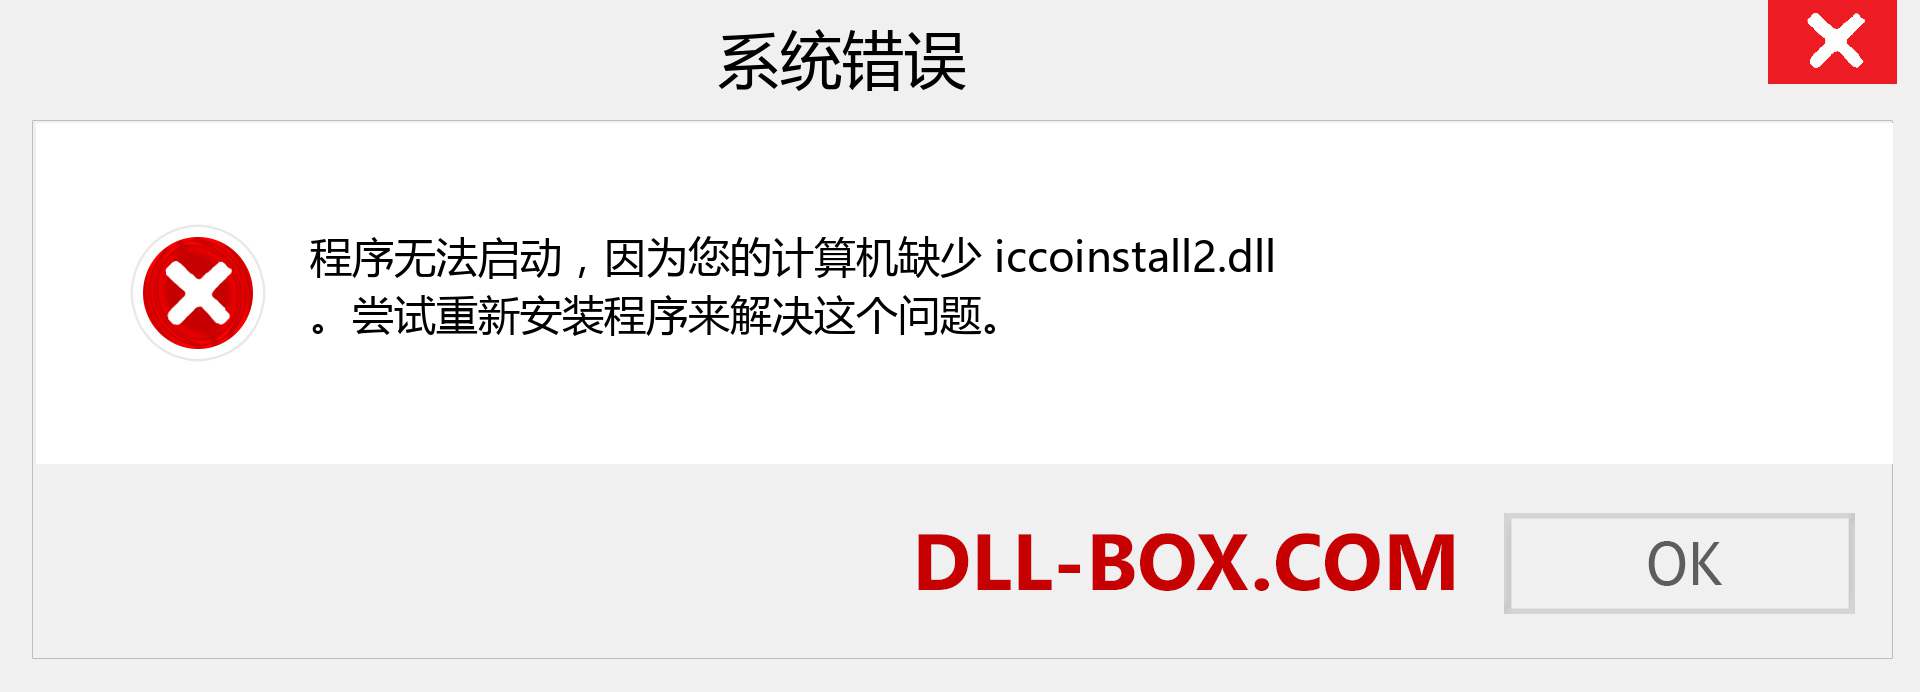 iccoinstall2.dll 文件丢失？。 适用于 Windows 7、8、10 的下载 - 修复 Windows、照片、图像上的 iccoinstall2 dll 丢失错误